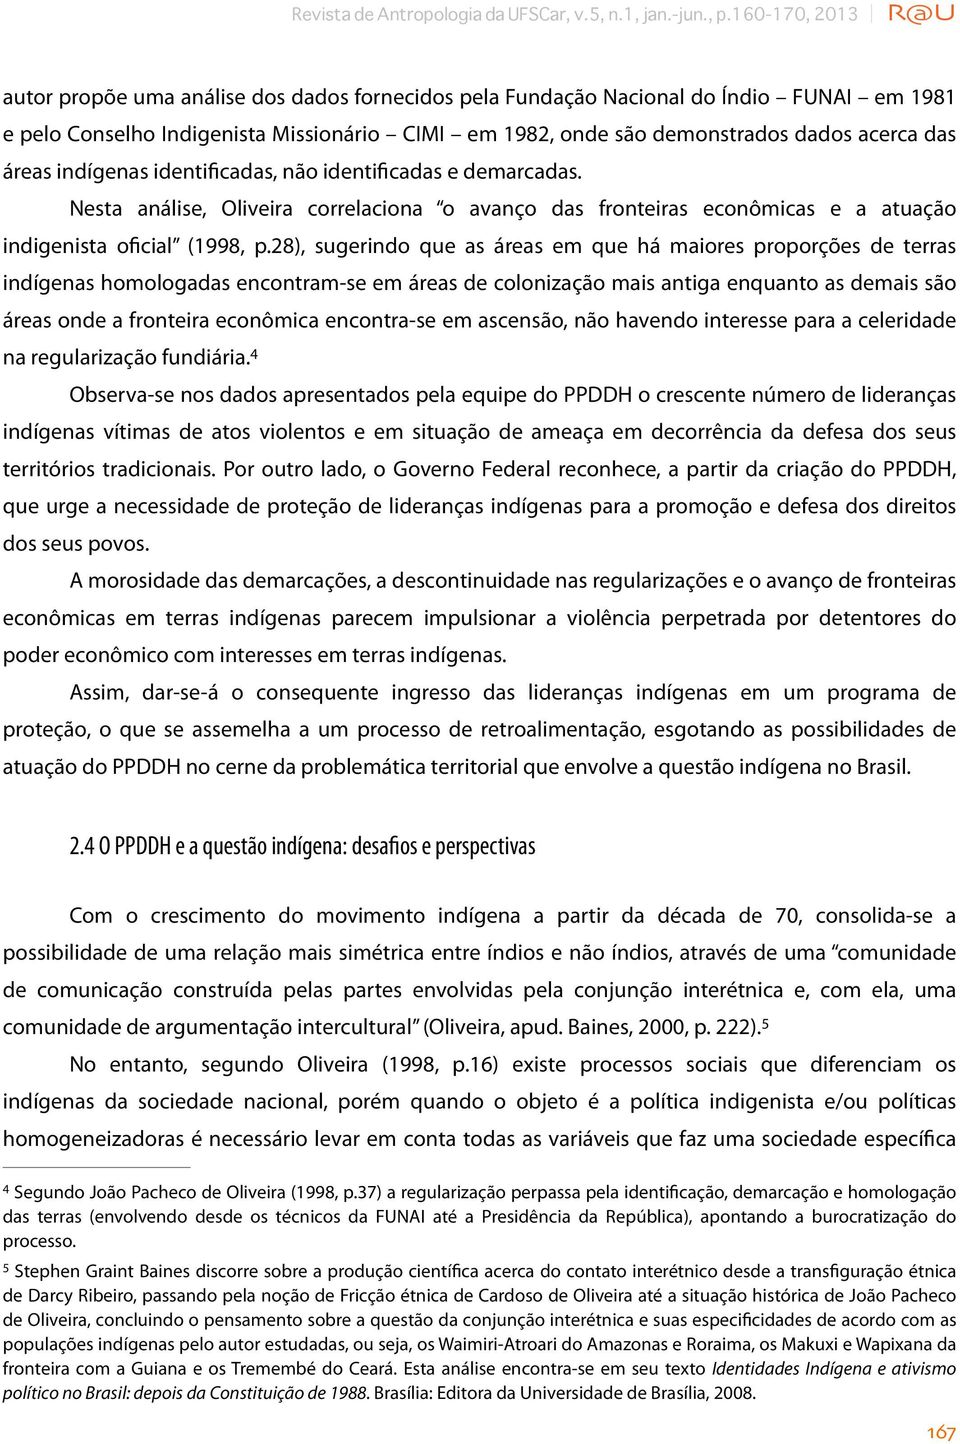 das áreas indígenas identificadas, não identificadas e demarcadas. Nesta análise, Oliveira correlaciona o avanço das fronteiras econômicas e a atuação indigenista oficial (1998, p.